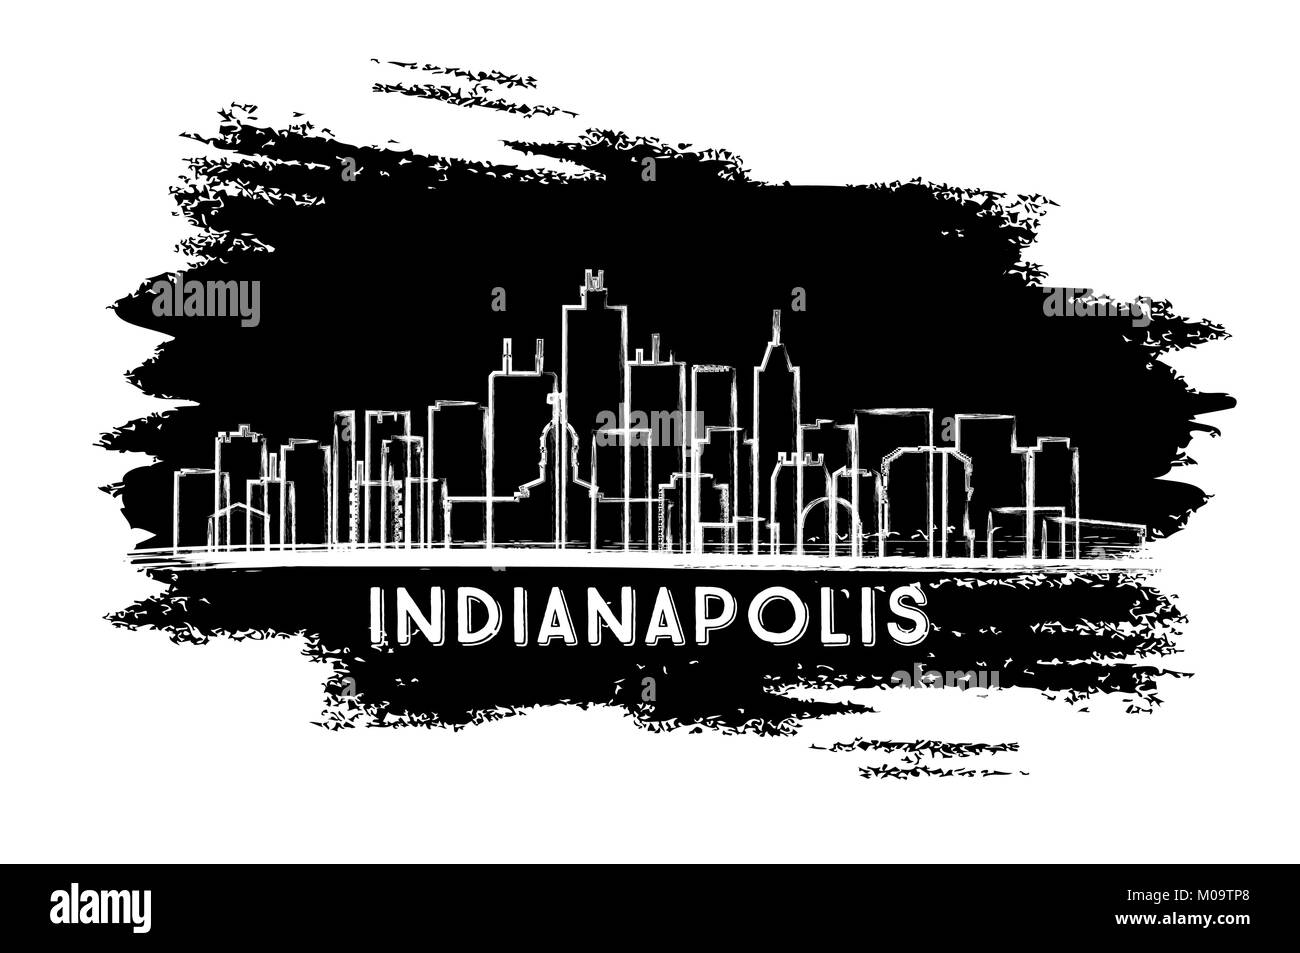 Indianapolis Indiana USA City Skyline Silhouette. Croquis dessinés à la main. Les voyages d'affaires et tourisme Concept avec l'architecture moderne. Illustration de Vecteur